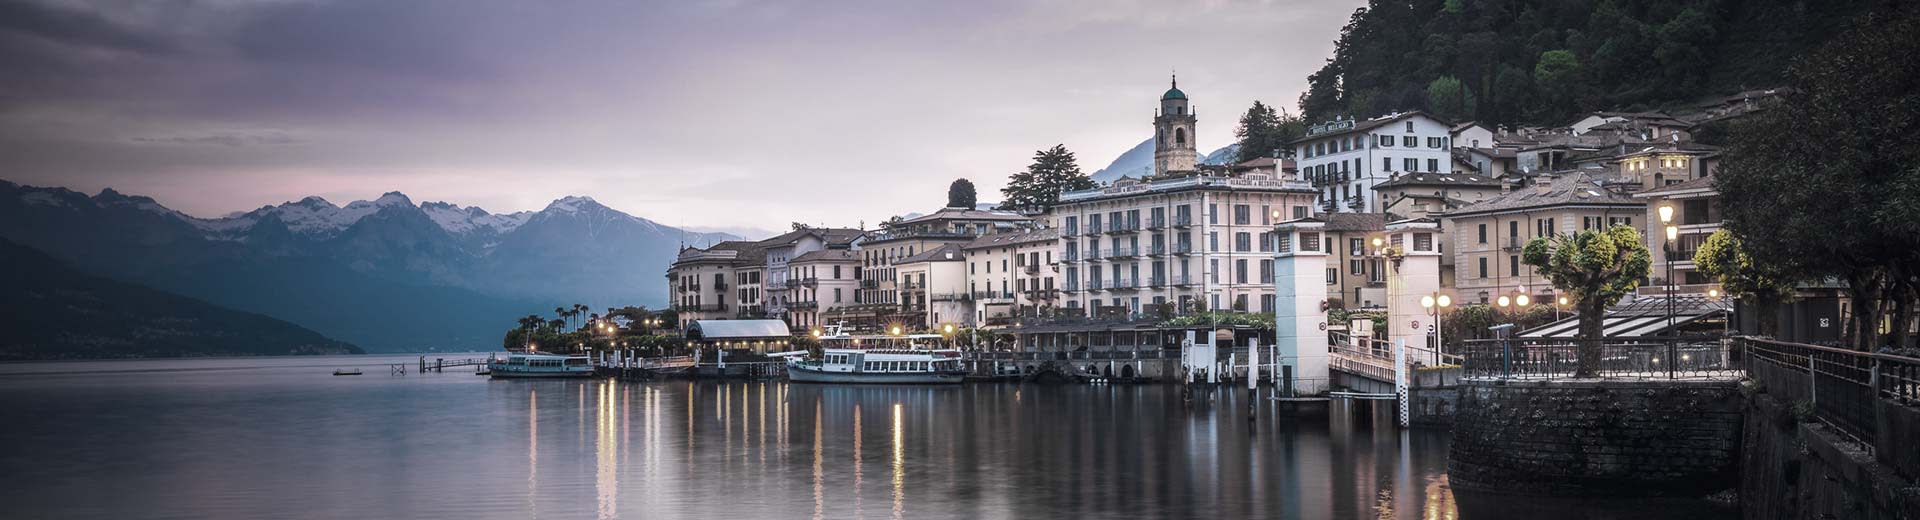 El hermoso edificio de Como se alinea en la orilla del lago a media luz.